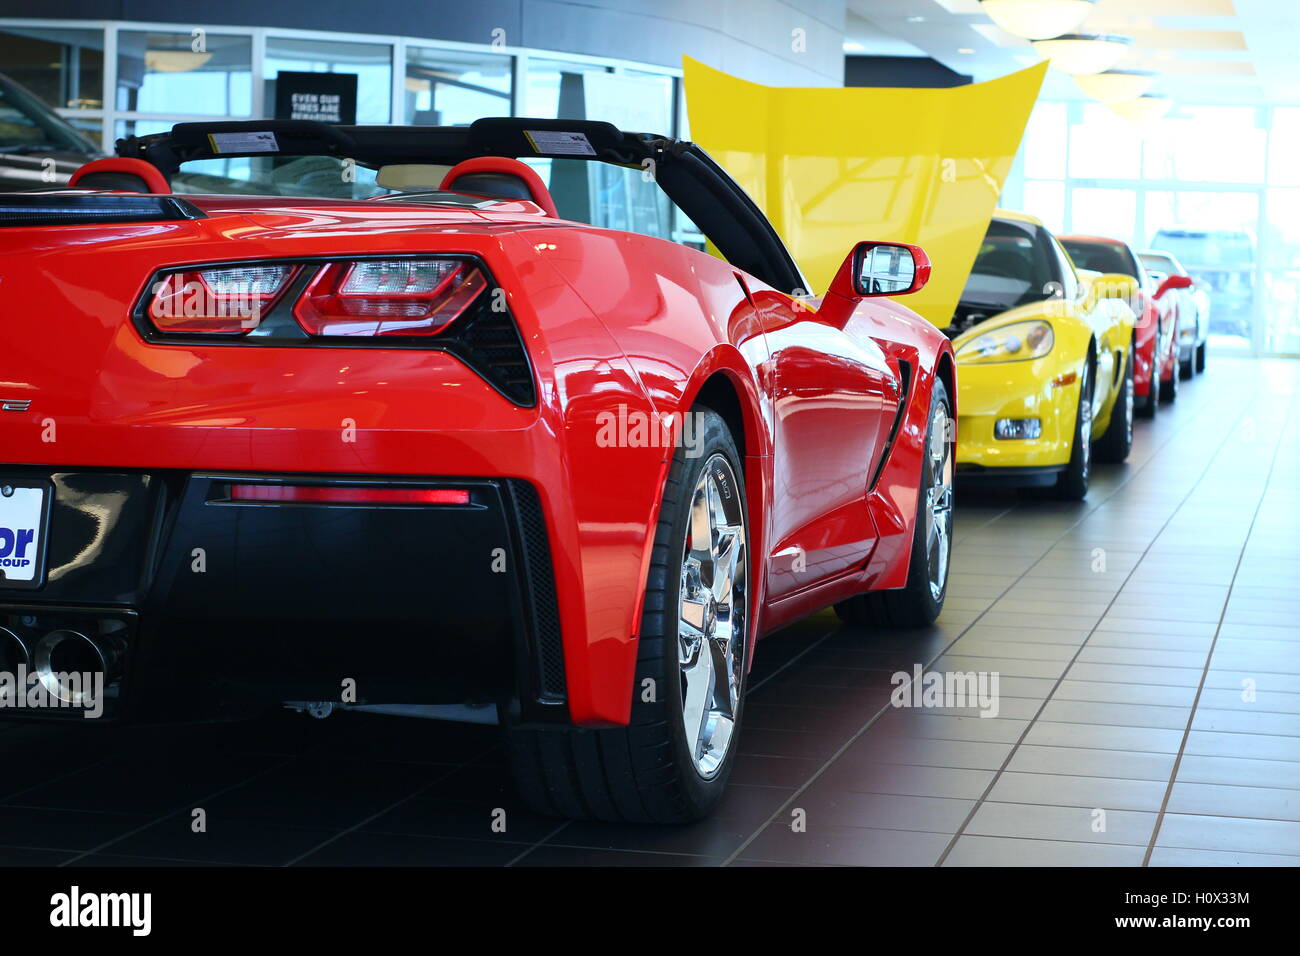 Rangée de voitures de sport Ferrari 250 s'asseoir sur l'affichage à l'electronics store, attendant d'être vendus Banque D'Images